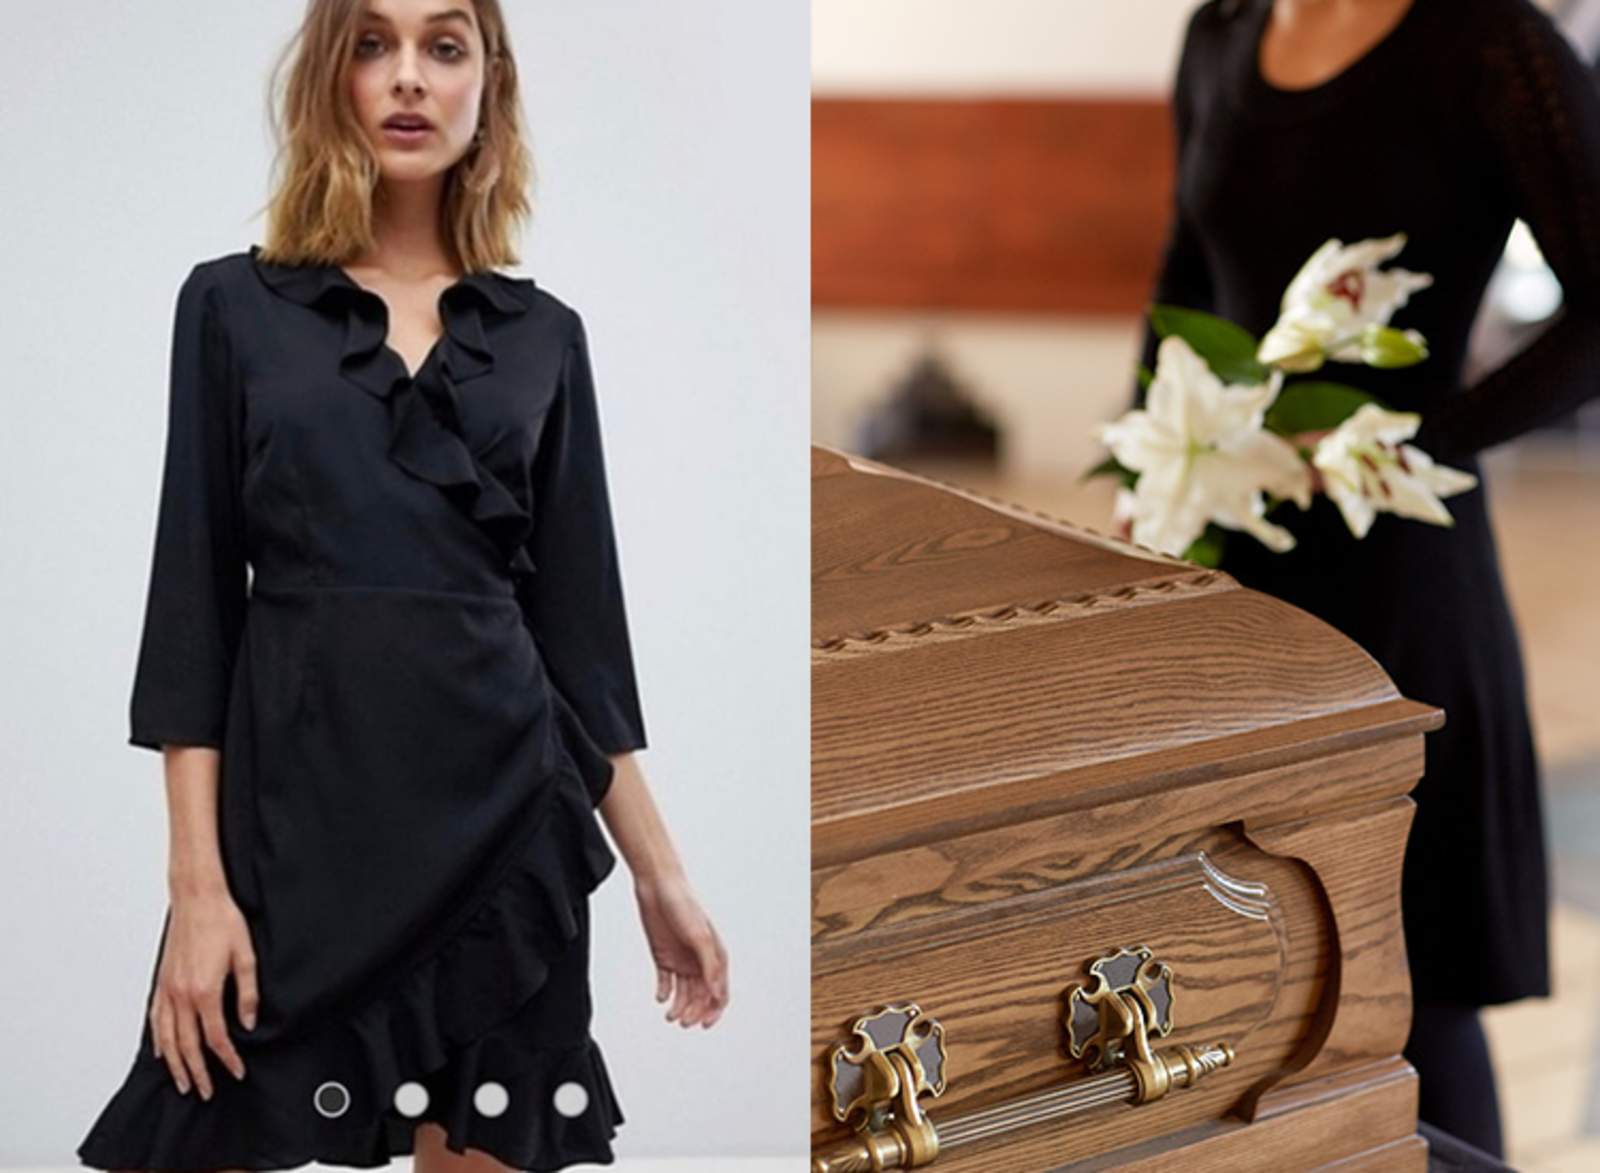 Madre pregunta si su vestido es inapropiado para un funeral